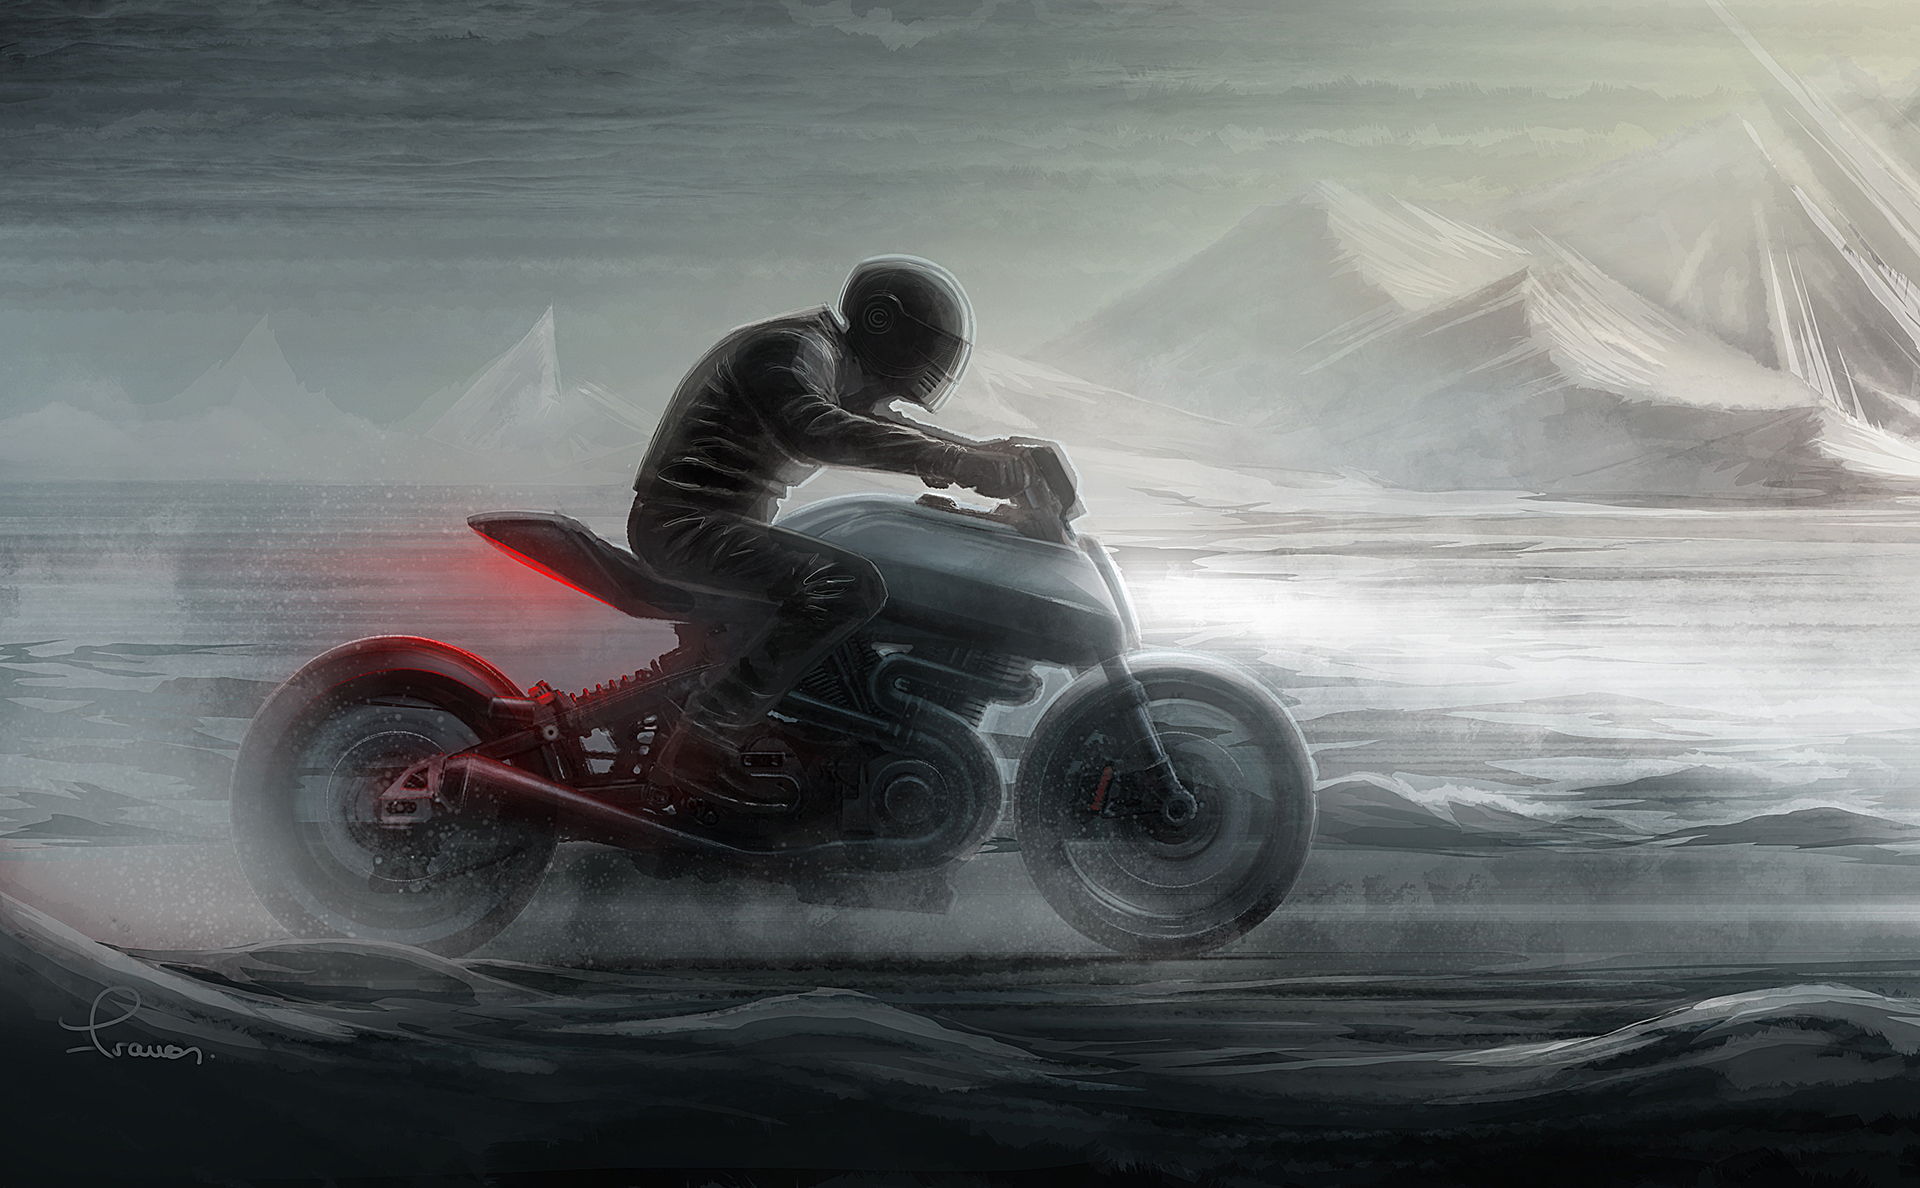 年轻男子骑摩托车兜风-蓝牛仔影像-中国原创广告影像素材